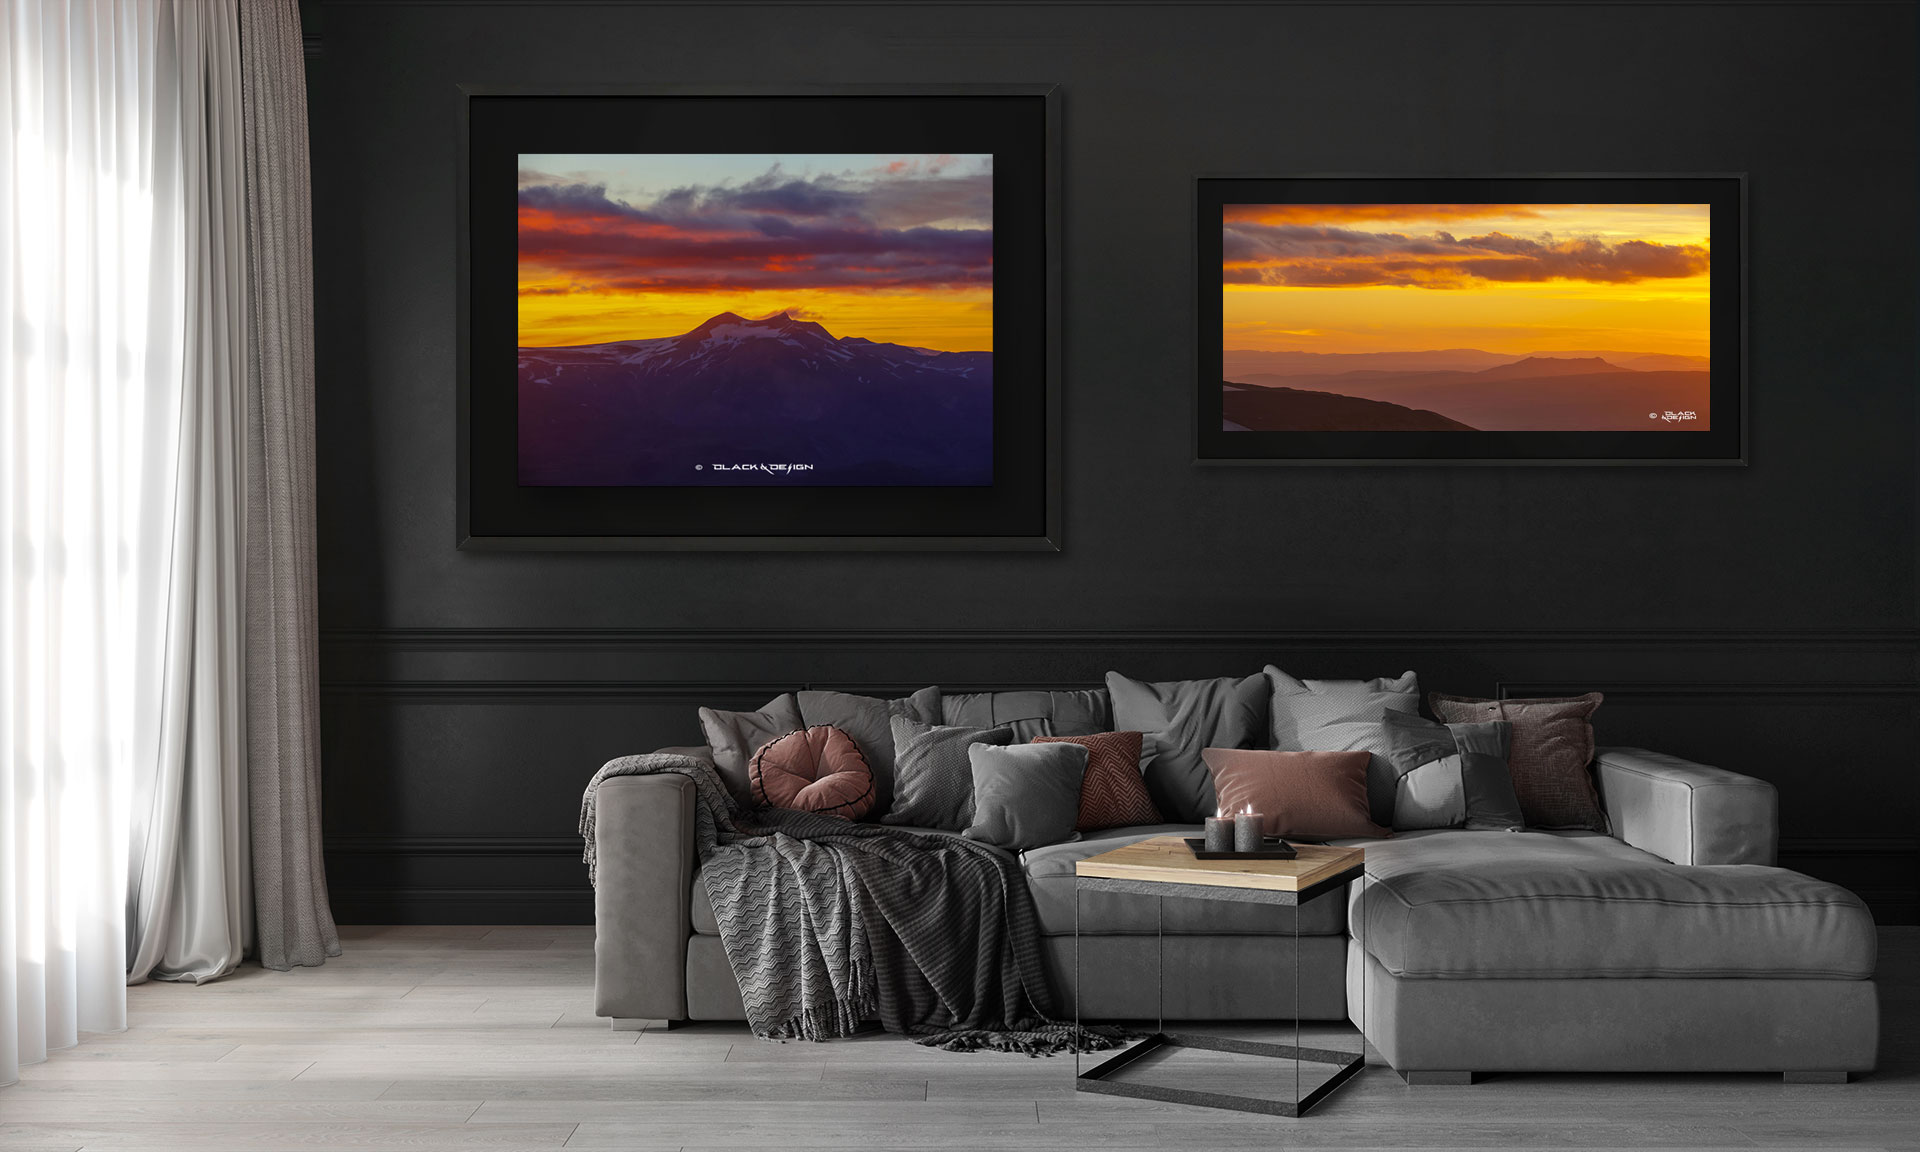 Naturmotiv i form av foton som visar solnedgången över Thorsmörk på Island. Motiven är inramade och visas i en stilig inredning.